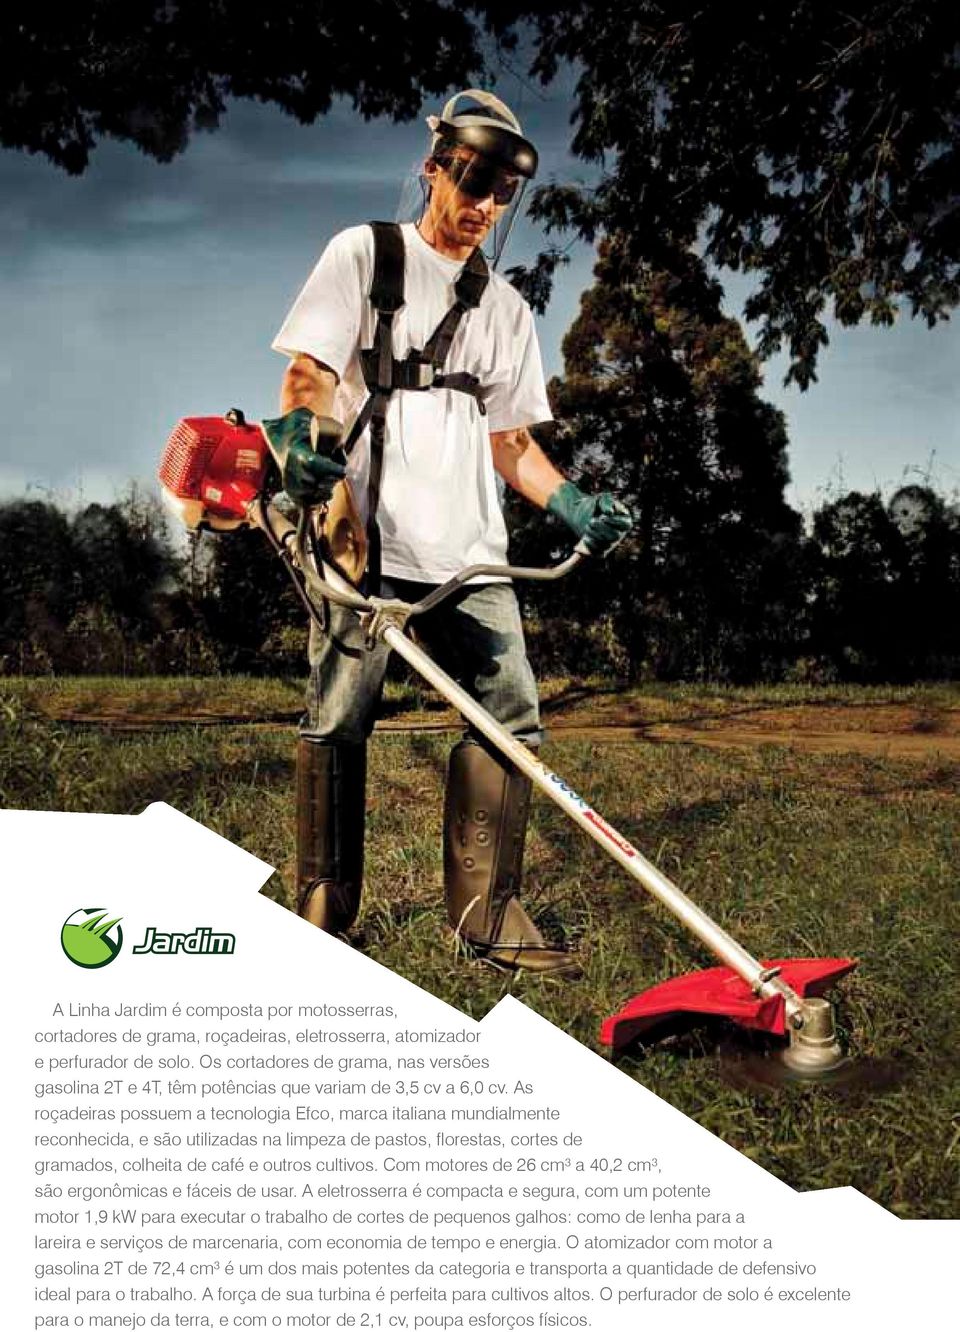 As roçadeiras possuem a tecnologia Efco, marca italiana mundialmente reconhecida, e são utilizadas na limpeza de pastos, florestas, cortes de gramados, colheita de café e outros cultivos.